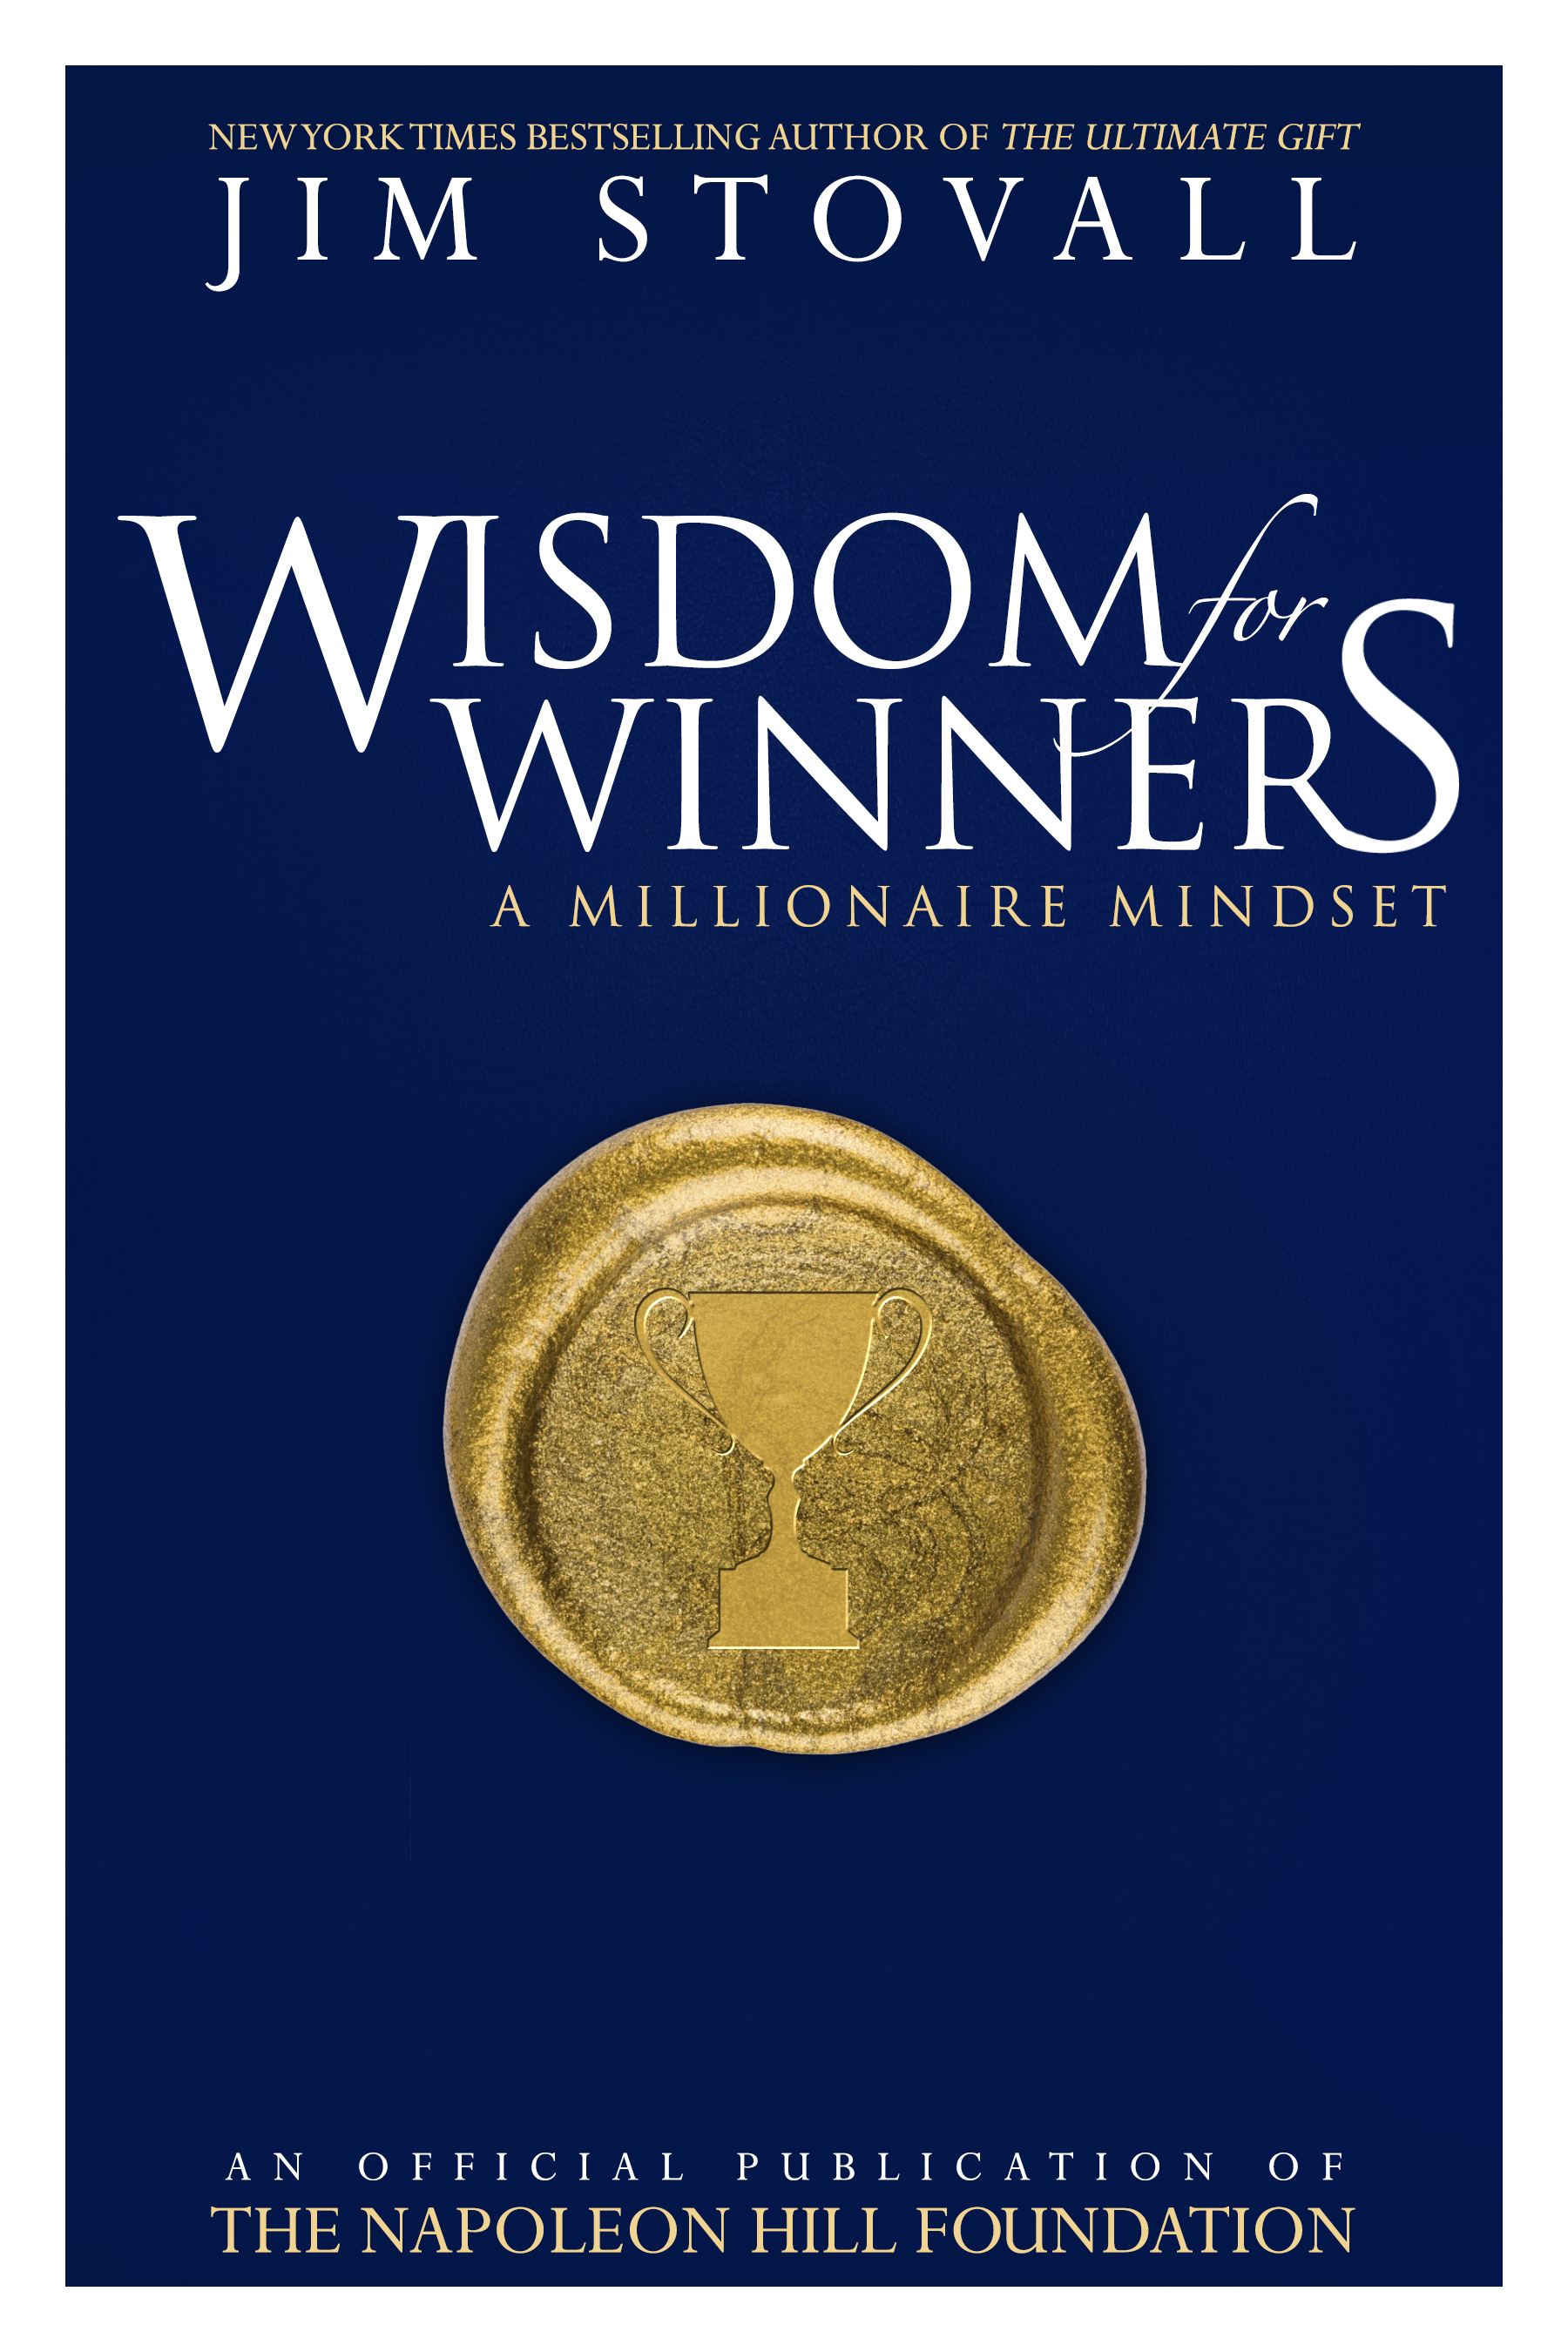 Wisdom_for_Winners.jpg